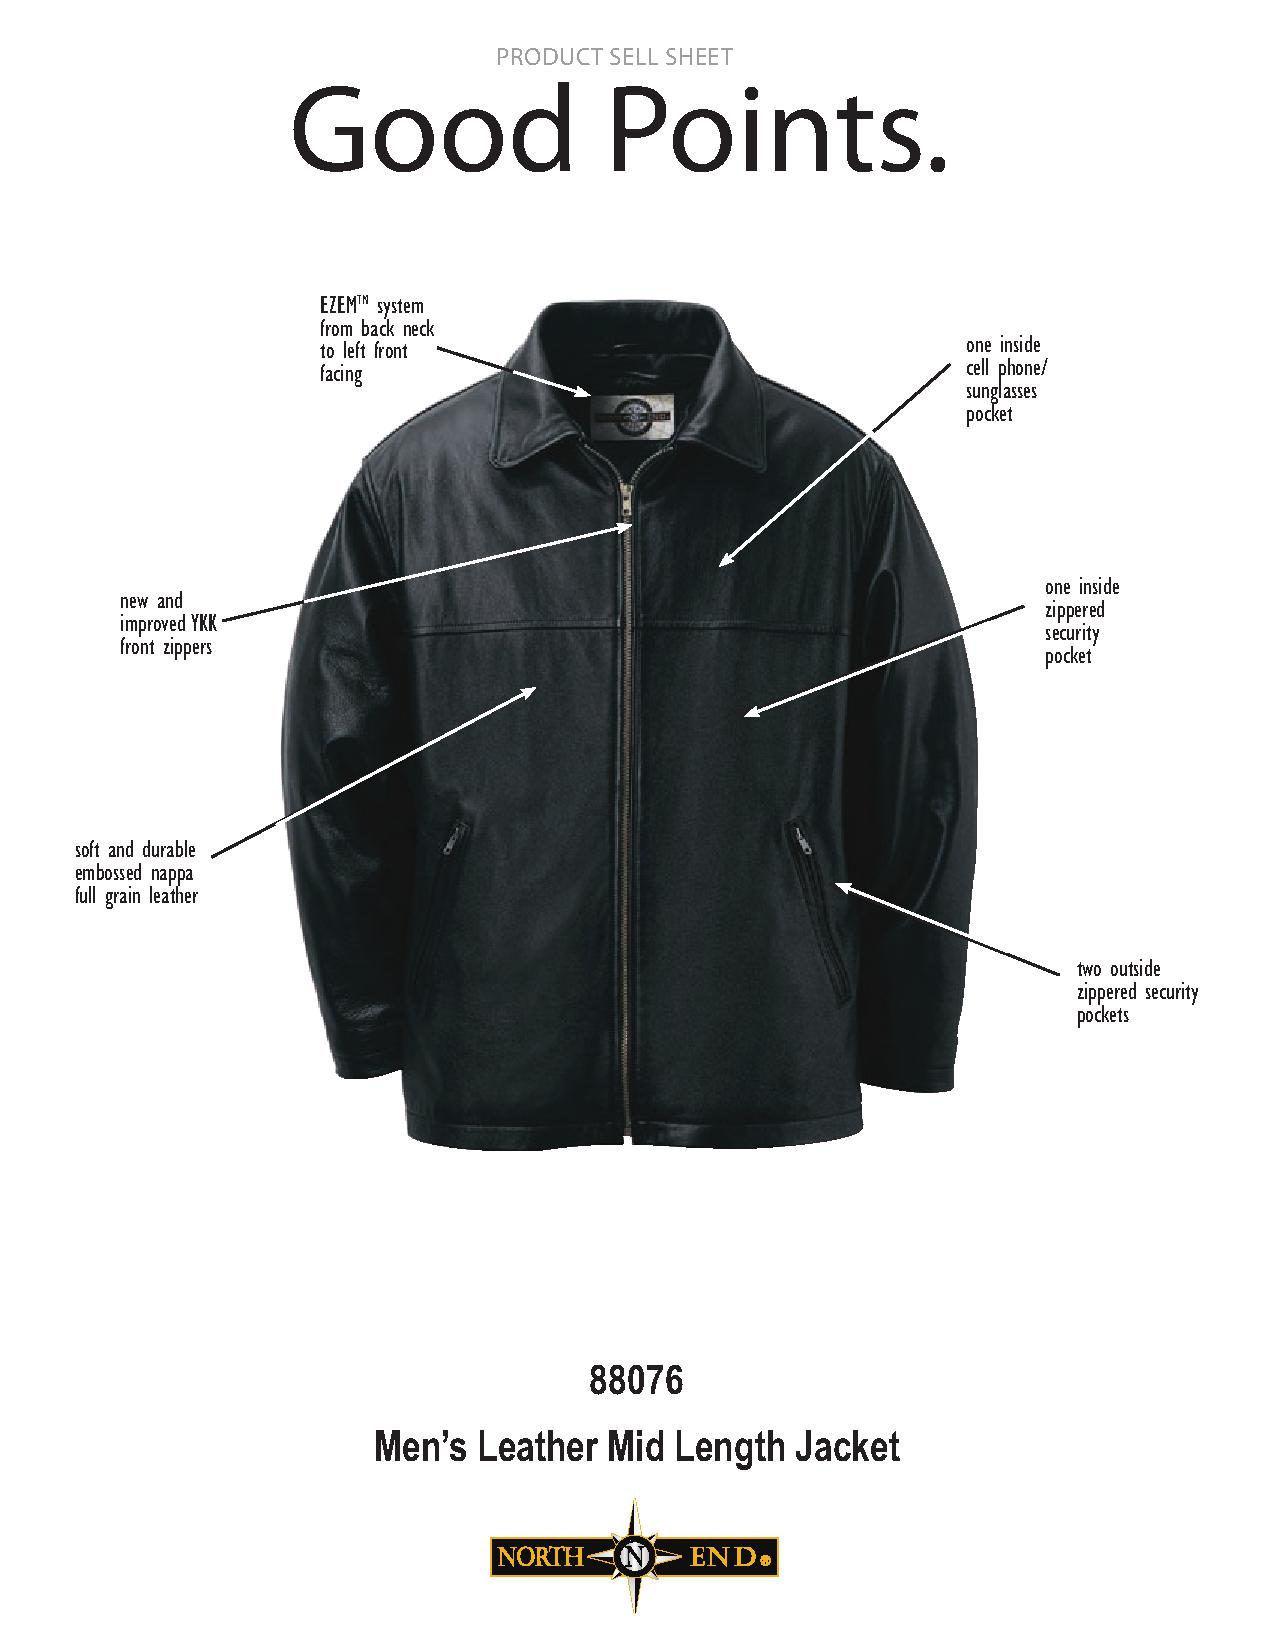 Ash City UTK 1 Warm.Logik 88076 - Men's Leather Mid Length Jacket